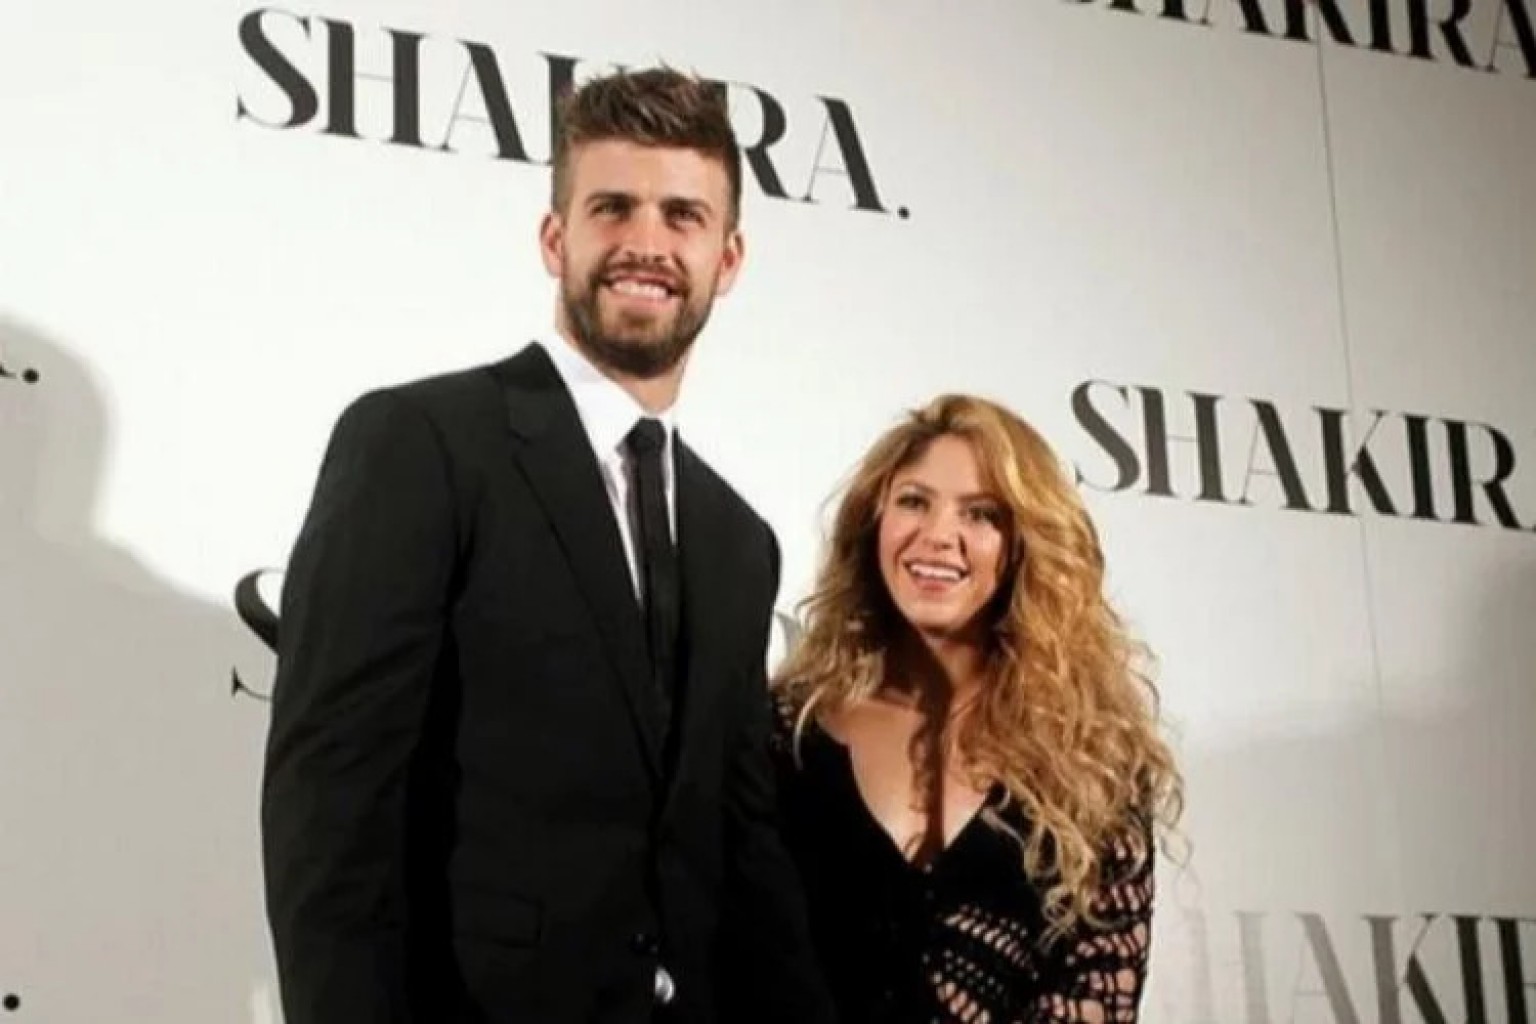 Shakira y Piqué: ¿Todos somos terapeutas?